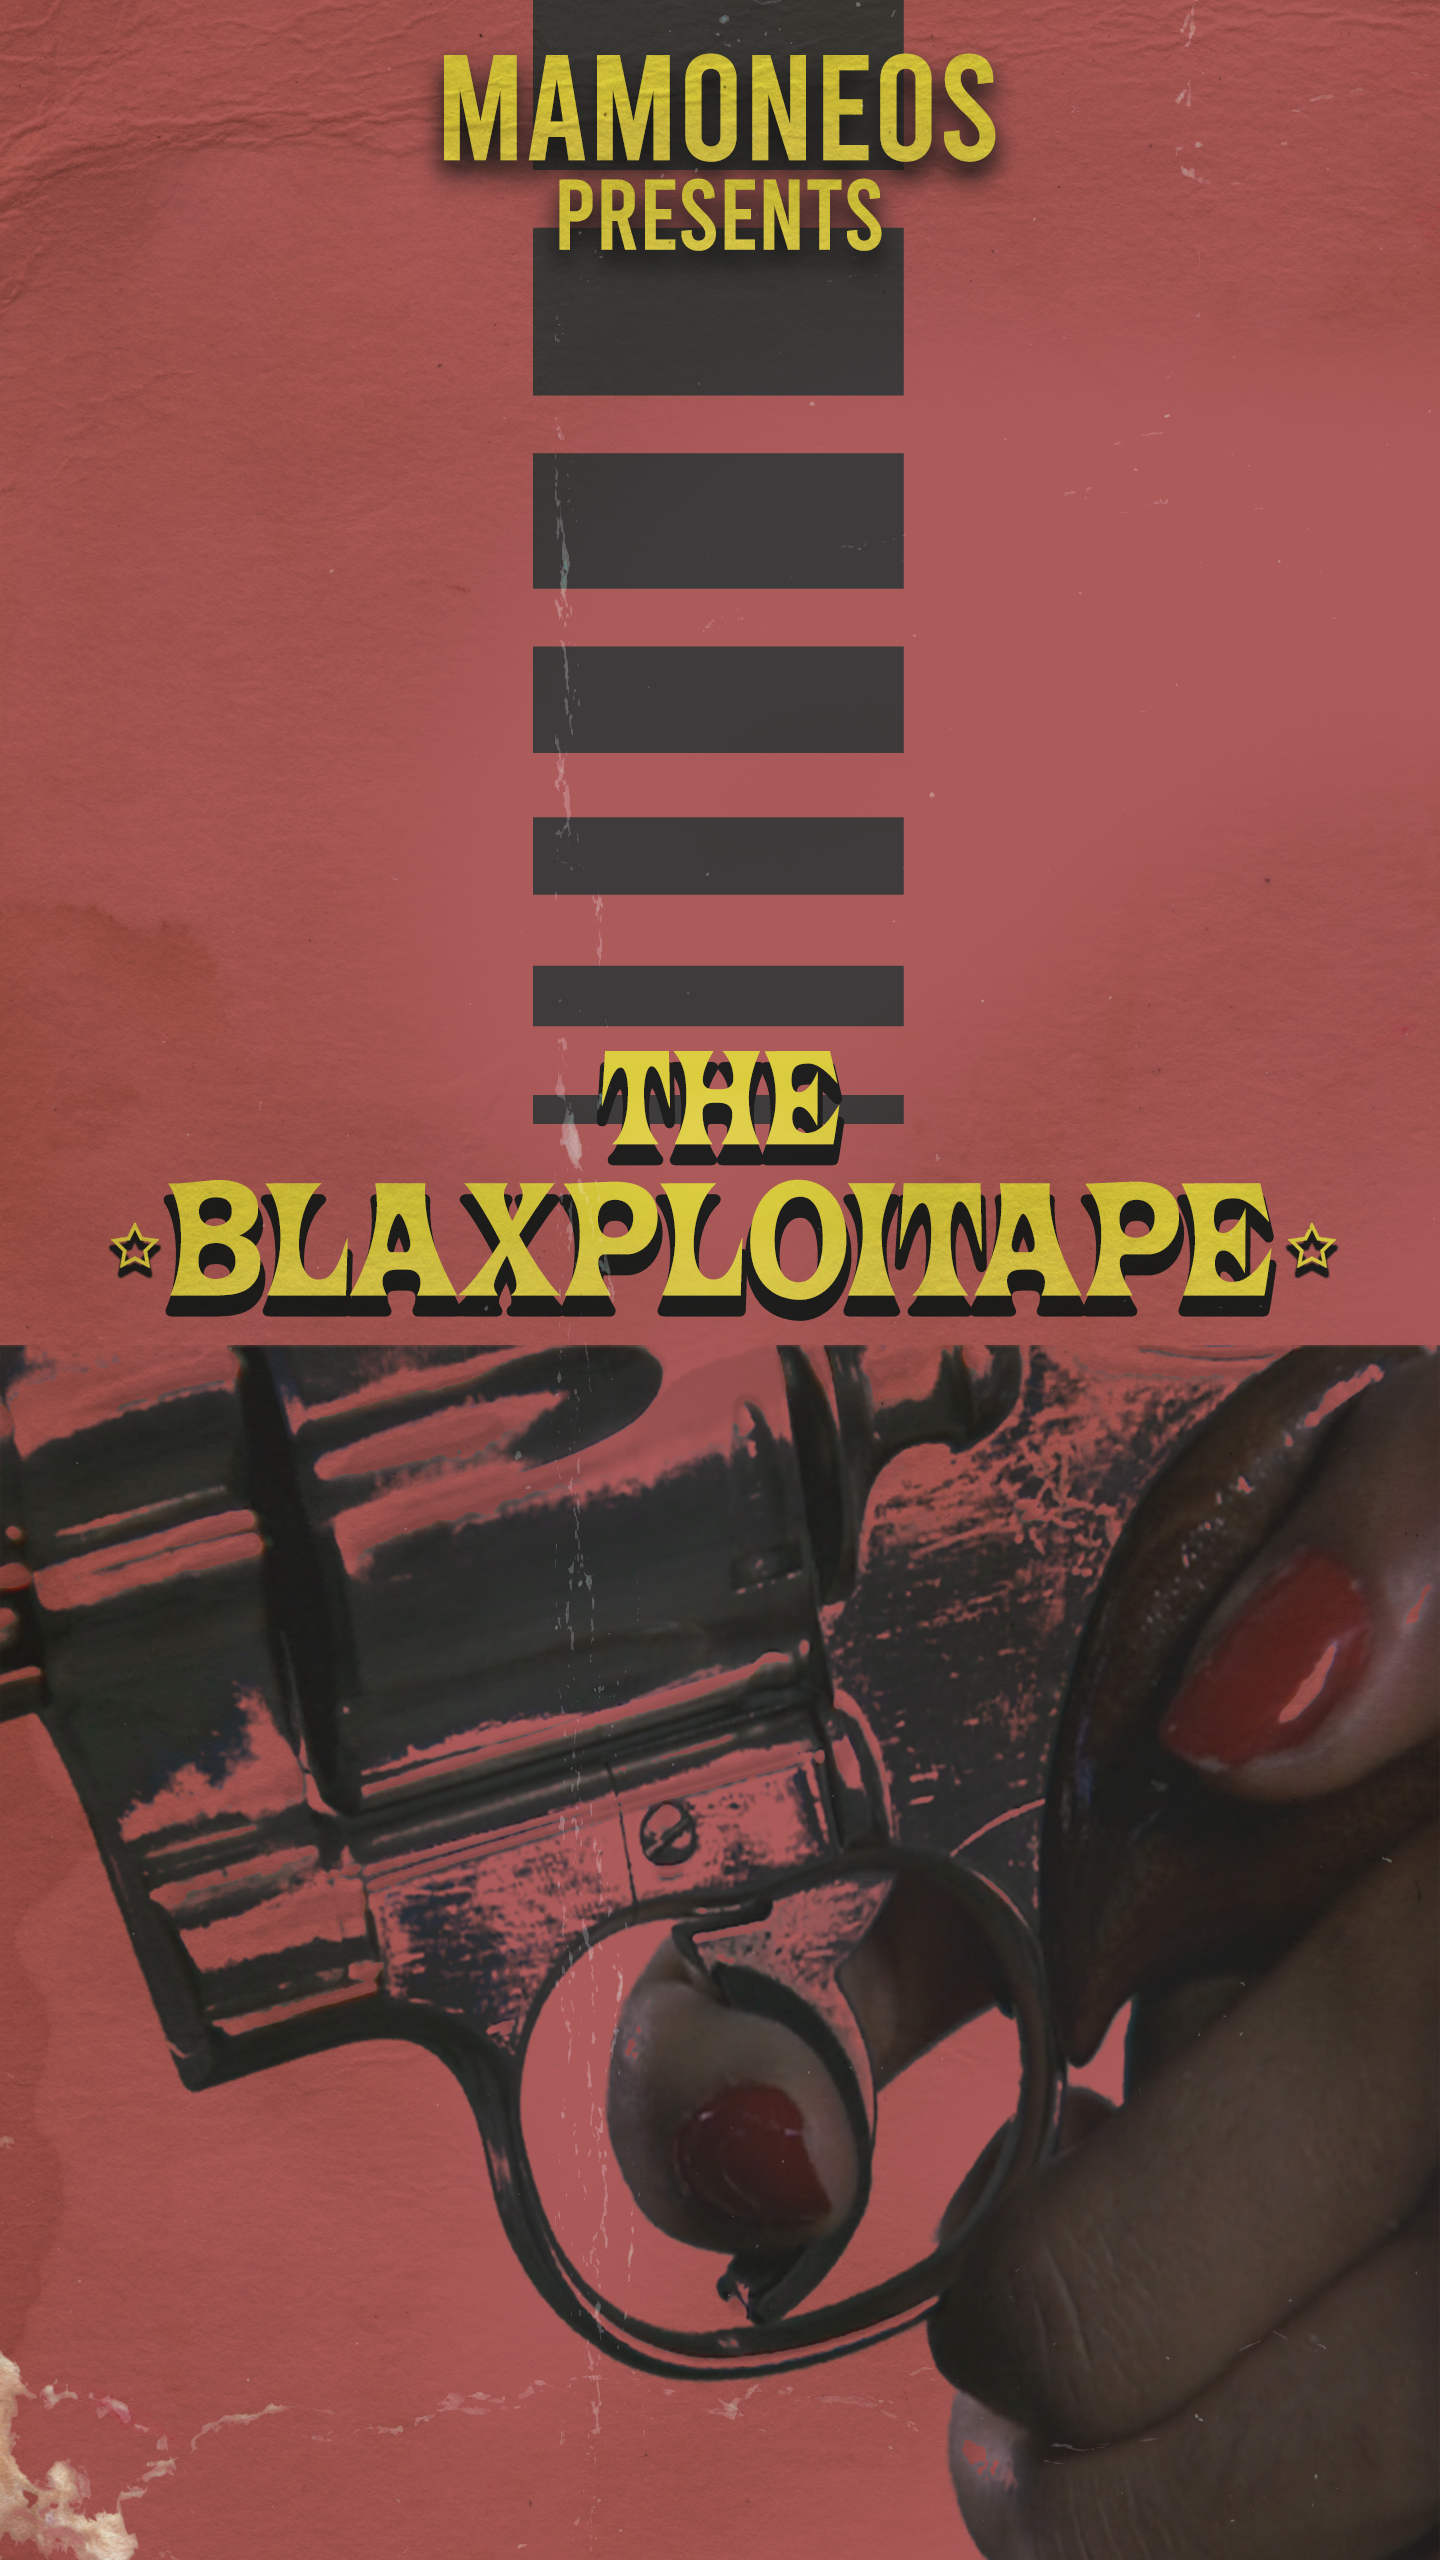 Mamoneos___the_blaxploitape__beat_tape_